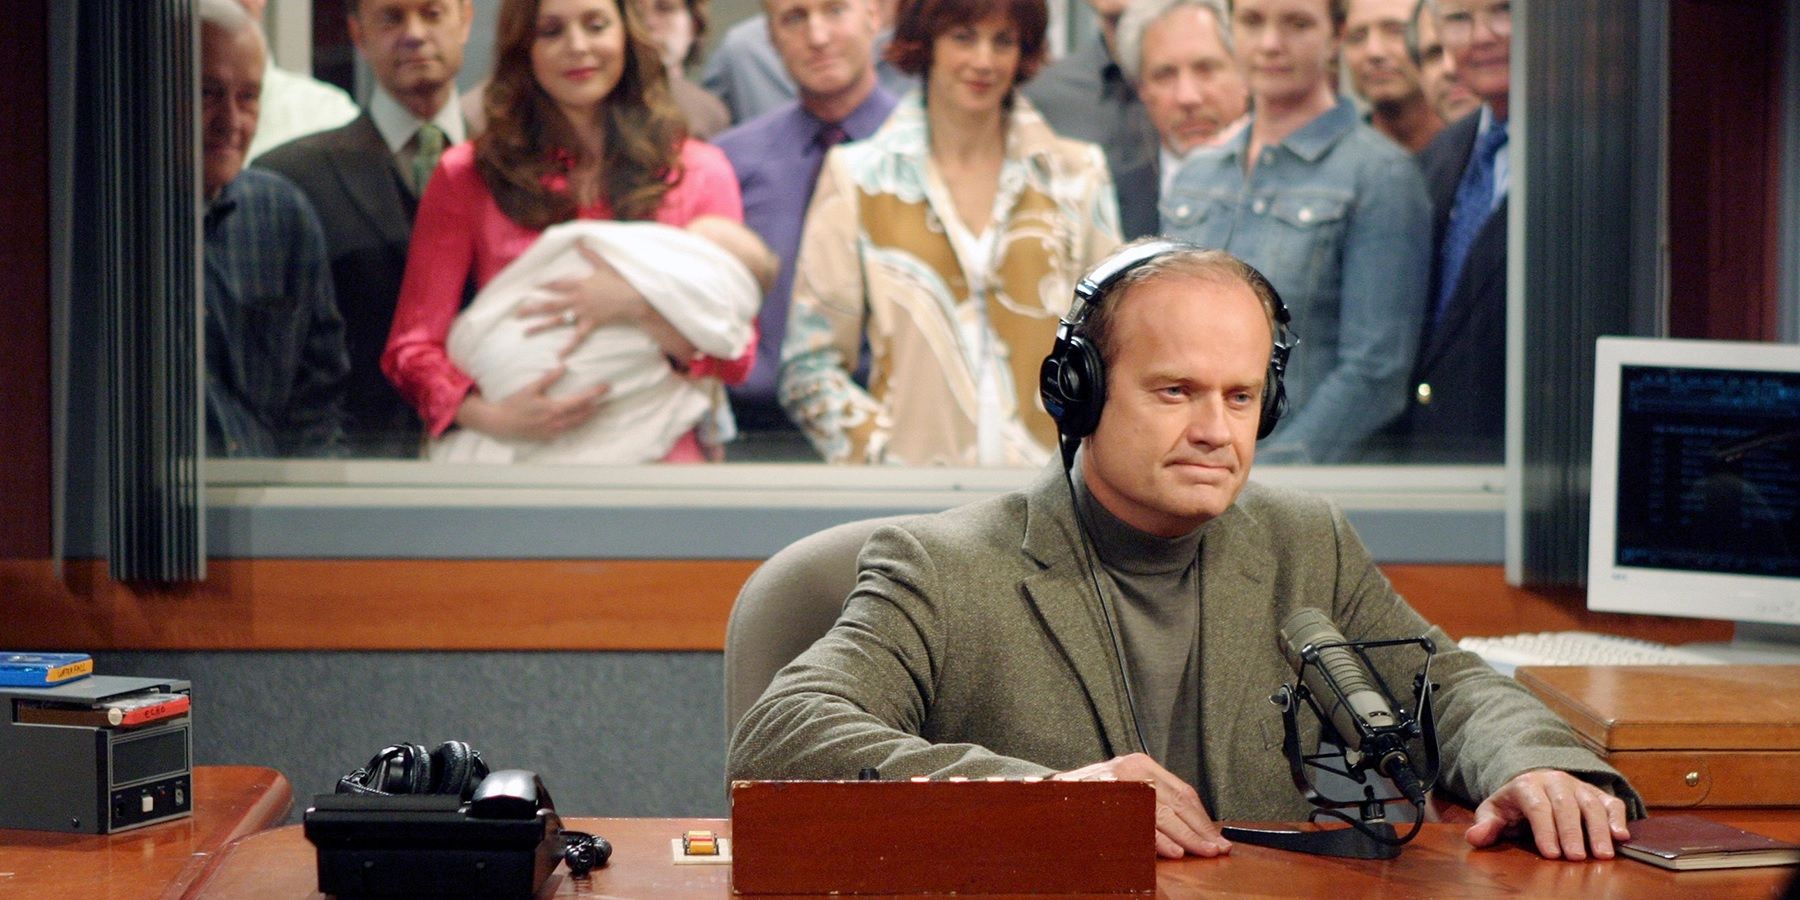 Frasier's farewell speech in the series finale of Frasier